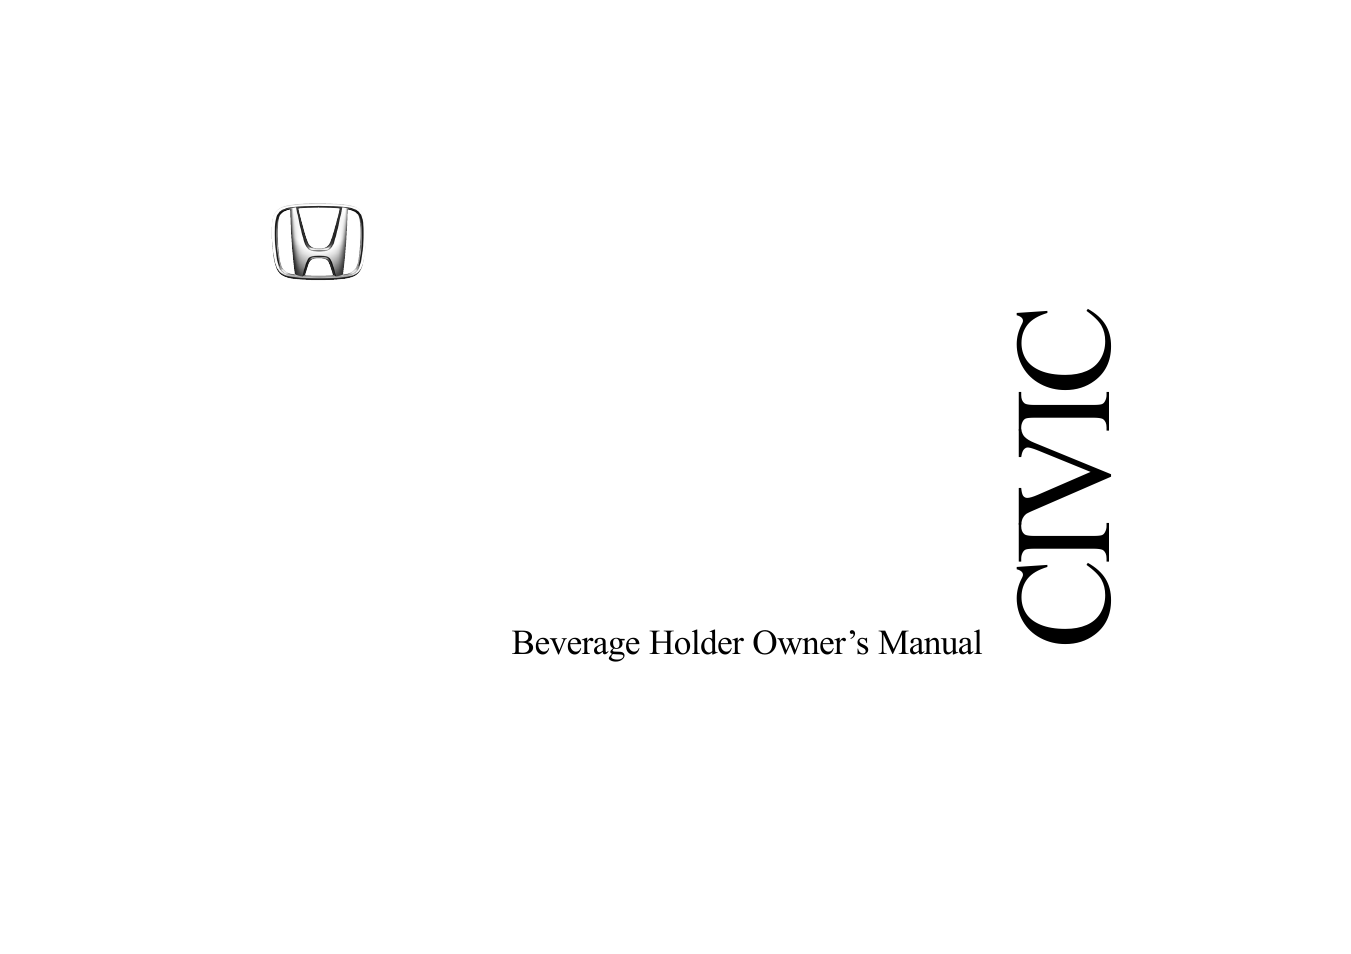 2005 Civic Beverage Holder